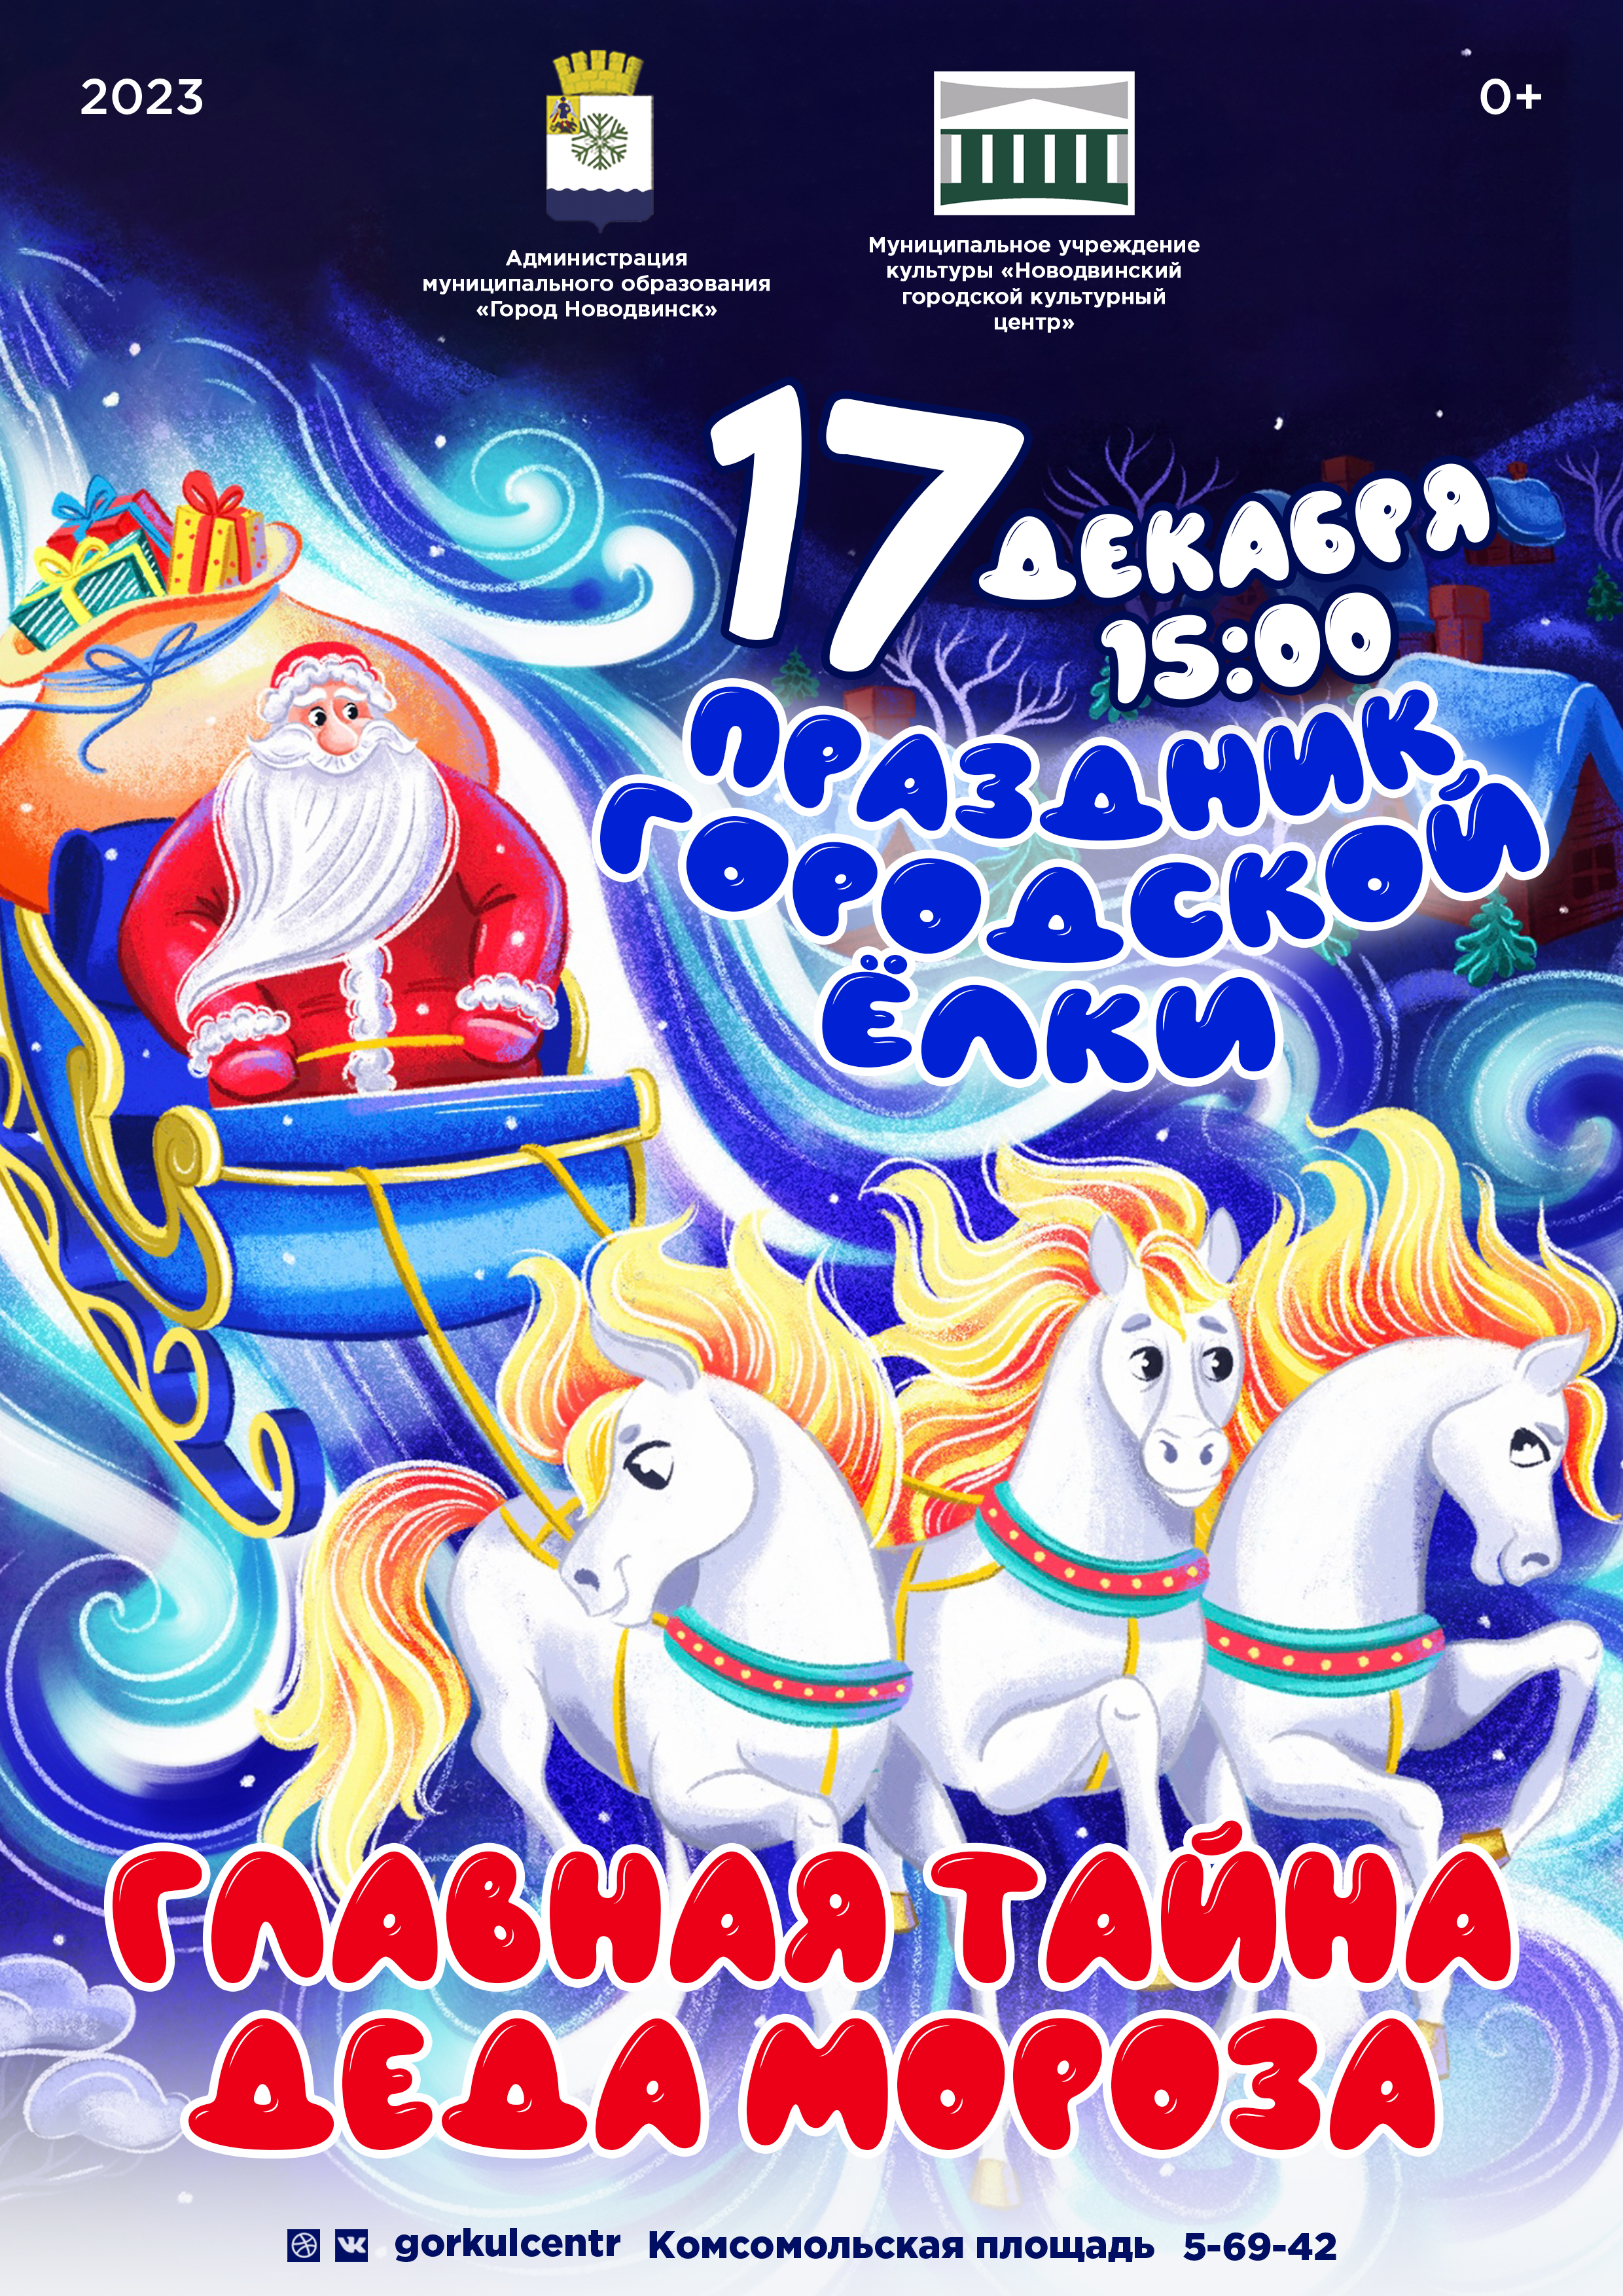 Дорогие гости и жители города! 17 декабря на Комсомольской площади в 15:00 пройдёт праздник городской ёлки!